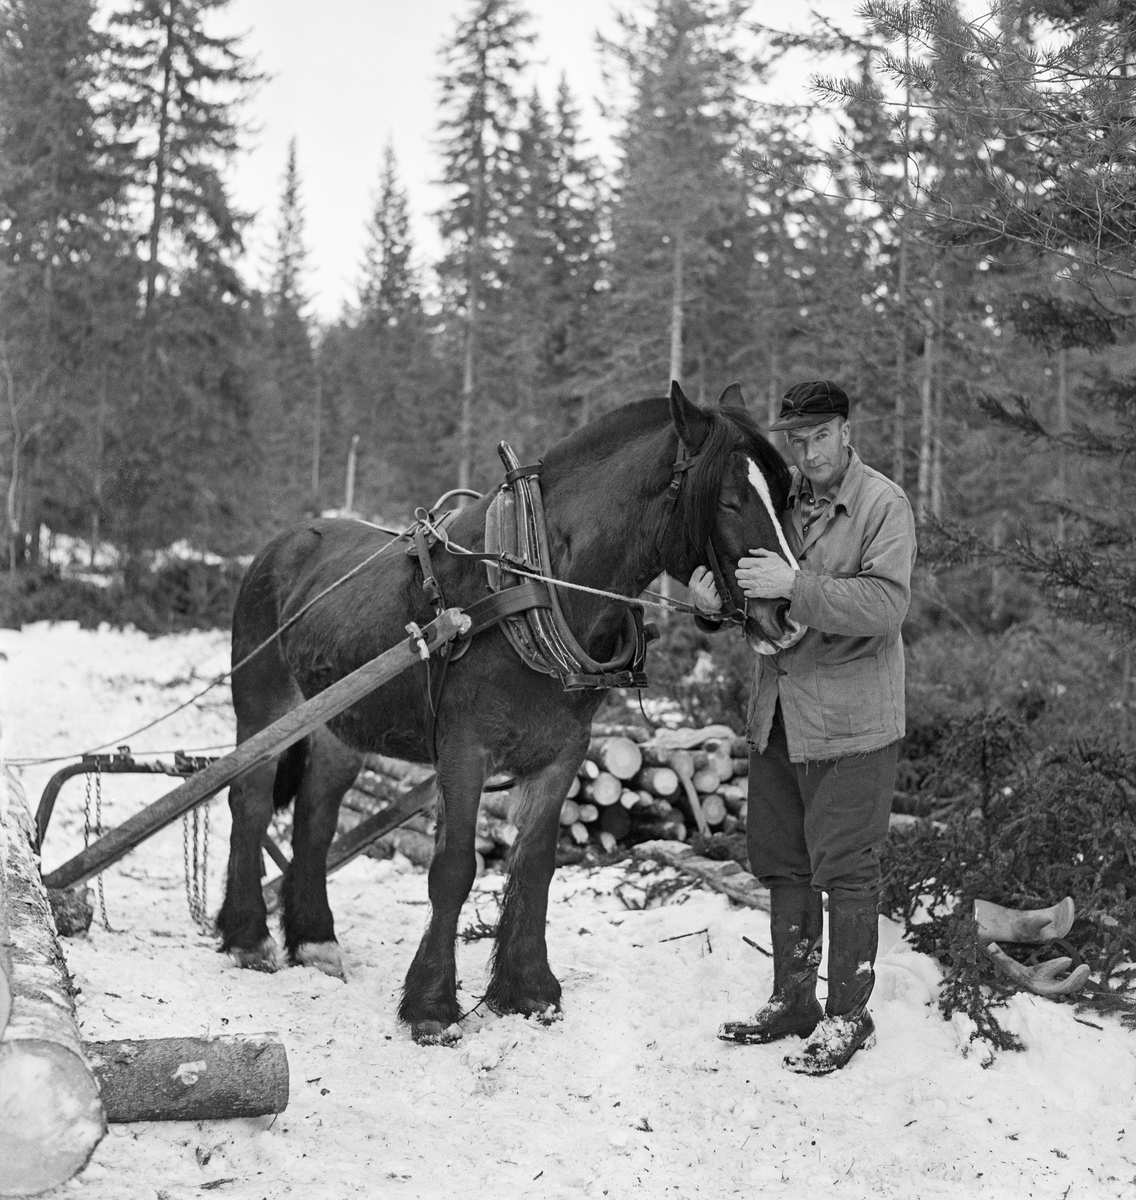 Tømmerkjøreren Jørgen Larsen (1919-1988) fra Hernes i Elverum.  Fotografiet er tatt vinteren 1971, da Larsen hadde kjøreoppdrag i Stavåsen.  Her sto kjørekaren ved hodelaget på hesten og kjælte litt med den, før de skulle videre etter neste vending.  Larsen var arbeidskledd, slik det høvde seg for en kjører på seinvinteren, med mørk vadmelsbukse, lys vindjakke, skjoldlue på hodet og langskaftete gummistøvler på beina.  Han hadde ikke votter på seg, men det ligger et par arbeidshansker som han antakelig brukte under lessing i baret bak ham.  Hesten hadde arbeidssele.  Det var seletøyet som gjorde det mulig å trekke, bremse og rygge med hesten.  Denne hesten har bogtresele med ei stoppet ringpute, som er tredd over hodet på dyret slik at den ligger an mot nakken og bringen på trekkdyret.  Derfra går det kraftige drotter (draglær) til orringen, som er plassert i krysningspunktet mellom bukgjorden, bærereimene fra høvret og bakselen.  Bakselen, som ble ført horisontalt fra orringene bakover sidene og rundt øvre del av lårene, var nødvendig for at hesten skulle kunne «holde igjen» i utforbakker.  Hesten ble styrt ved hjelp av tømmer, som er forankret i et munnbitt.  Tømmene ble ført gjennom ringene på høvret, og de var så lange at kjørekaren kunne betjene dem fra en posisjon bak bøyledraget.  Bøyledraget besto av dragarmer av tre med ei omvendt U-formet jernbøyle som «bank» (forbindelsesledd) mellom de bakre delene av trekkstengene.  Disse er beslått på undersida, slik at de fungerte som meier.  Jernbøyla var utstyrt med jernlenker (snarelenker) som stokkendene ble stroppet i, slik at det bare var bakendene som ble slept på bakken.  Bøyledraget ble vanlig i norsk skogbruk i åra etter 2. verdenskrig, fortrinnsvis til lunning (tømmertransport over korte avstander i skogen).